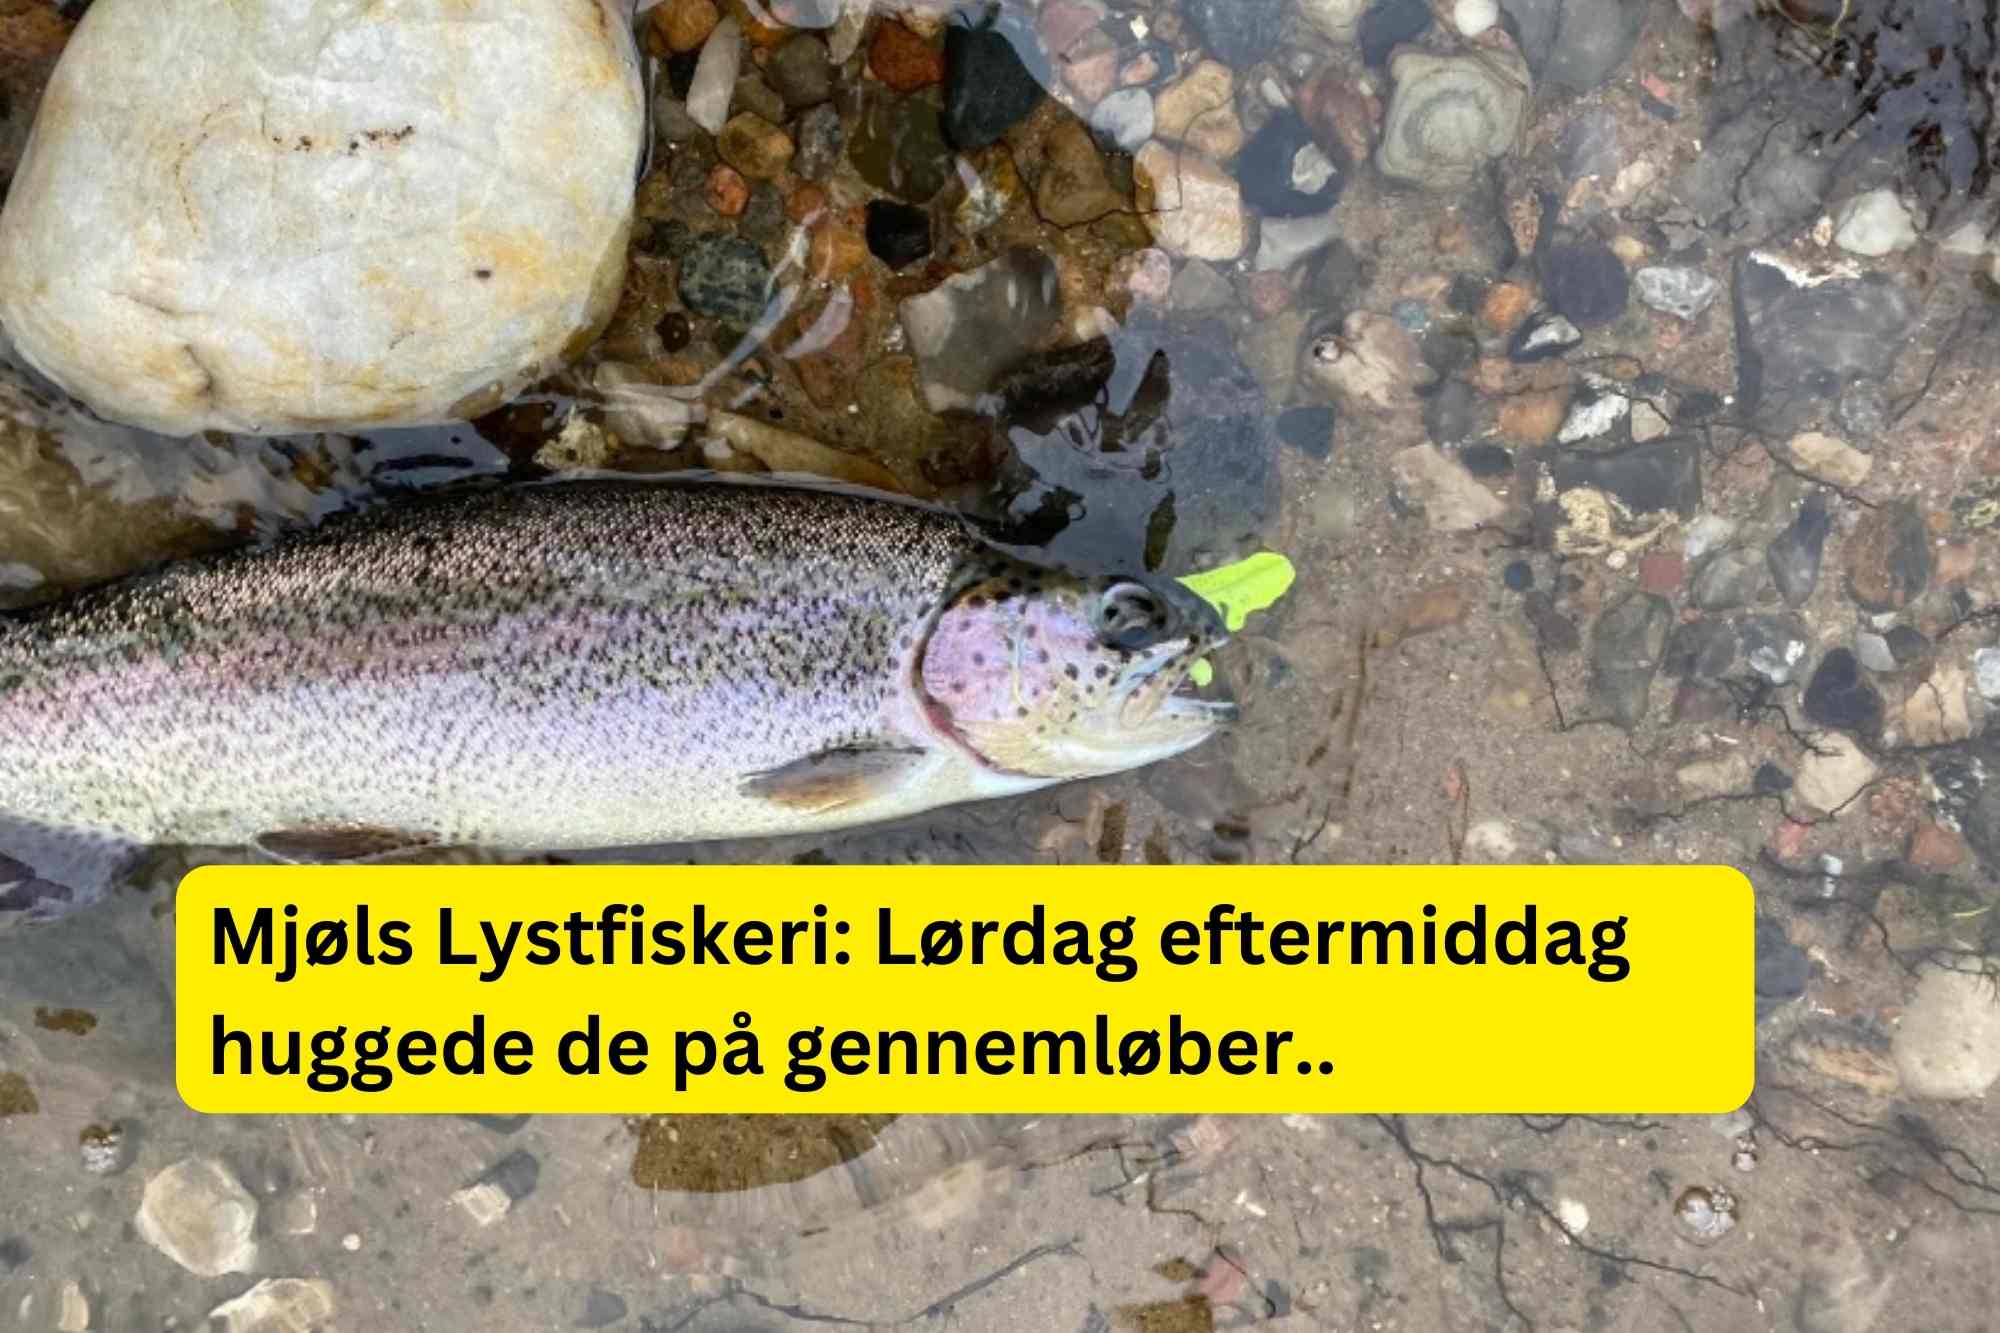 SE VIDEO – Mjøls Lystfiskeri: – De hugger på gennemløber – der er masser af fisk i SØ1